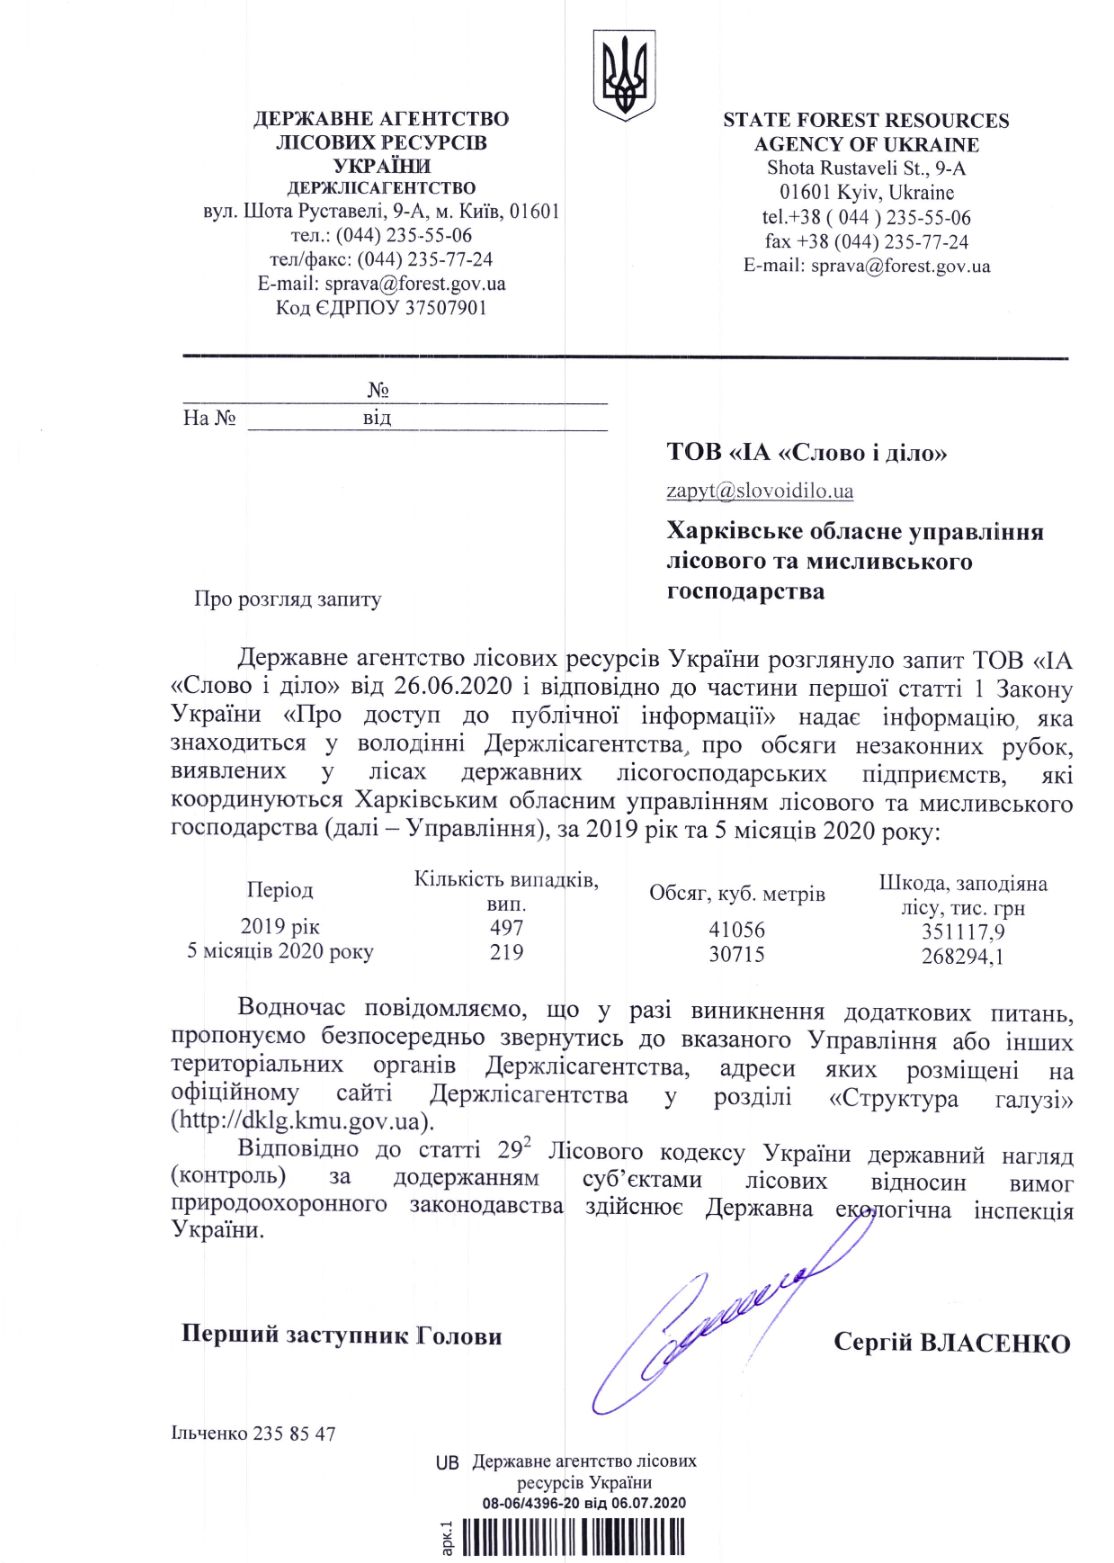 Лист Державного агентства лісових ресурсів України від 6 липня 2020 року